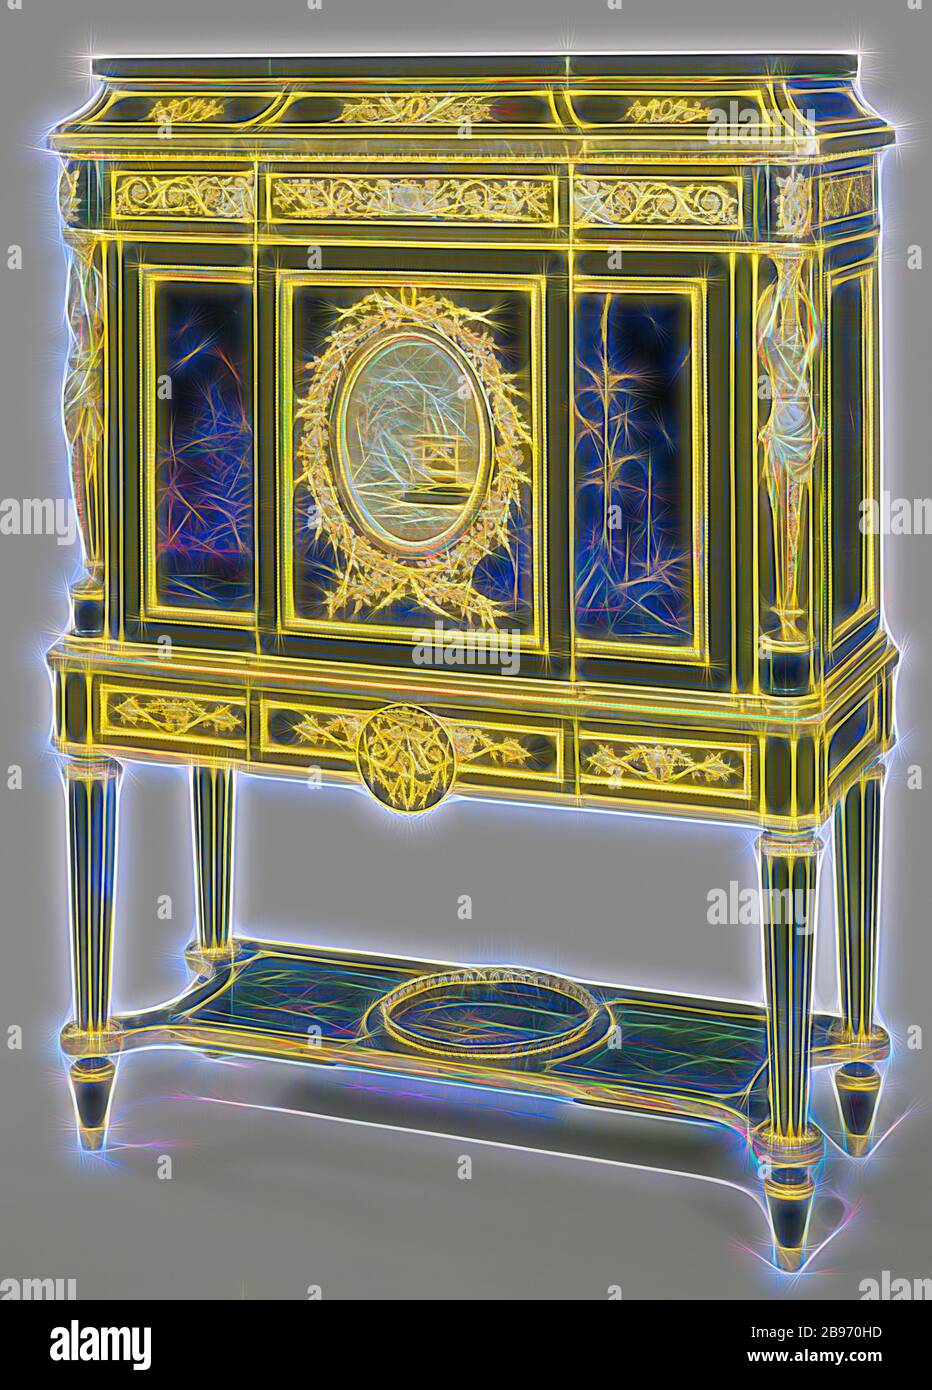 Secrétaire, zugeschrieben Jean-Henri Riesener (Französisch, 1734 - 1806 (Meister 1768), fournisseur du Garde-meuble Royal 1774 - 1784), Paris, Frankreich, um 1785, Eiche furniert mit Platten aus japanischem Lack und Ebenholz, Inneneinrichtung aus Mahagoni, vergoldete Bronzelager, schwarze Marmorplatte, 154.9 × 113 × 46.7 cm (61 × 44 1/2 × 18 3/8 in.), neu gestaltet von Gibon, Design von warmen fröhlich glühen von Helligkeit und Lichtstrahlen Strahlkraft. Klassische Kunst neu erfunden mit einem modernen Twist. Fotografie inspiriert von Futurismus, umarmt dynamische Energie der modernen Technologie, Bewegung, Geschwindigkeit und Kultur revolutionieren. Stockfoto